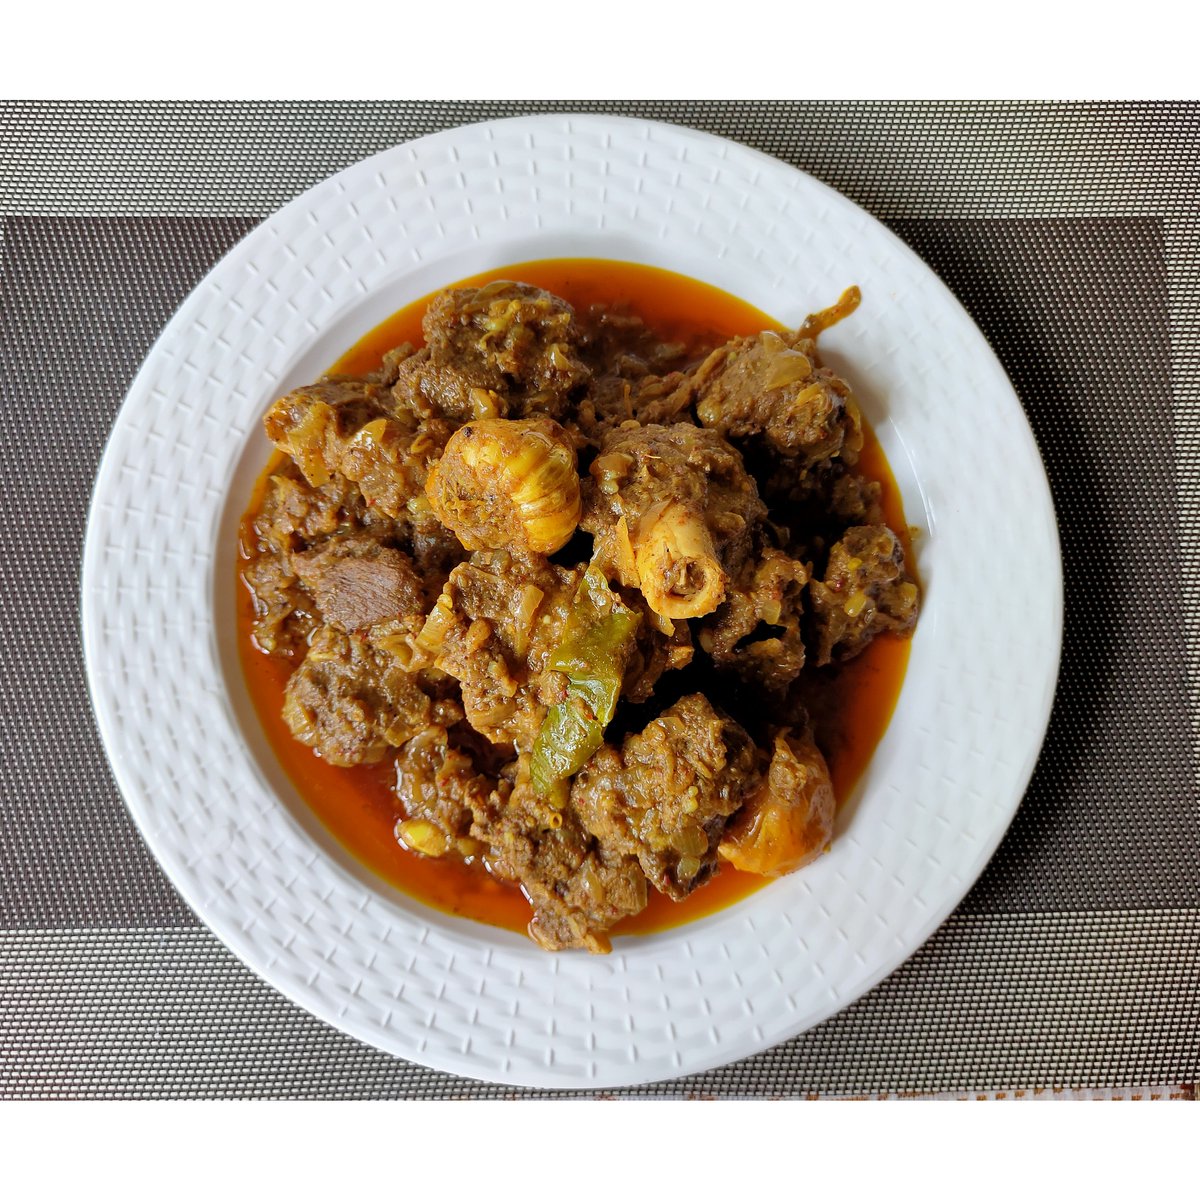 Champaran Mutton | Ahuna Mutton Recipe | Pot Mutton Recipe | Champaran Style Mutton Curry
To know the complete recipe click on my YouTube channel, link mentioned in the bio.
#ChamparanMutton 
#AhunaMutton 
#MuttonRecipes #Recipe #RecipeOfTheDay #recipeblog #mutton #bihari